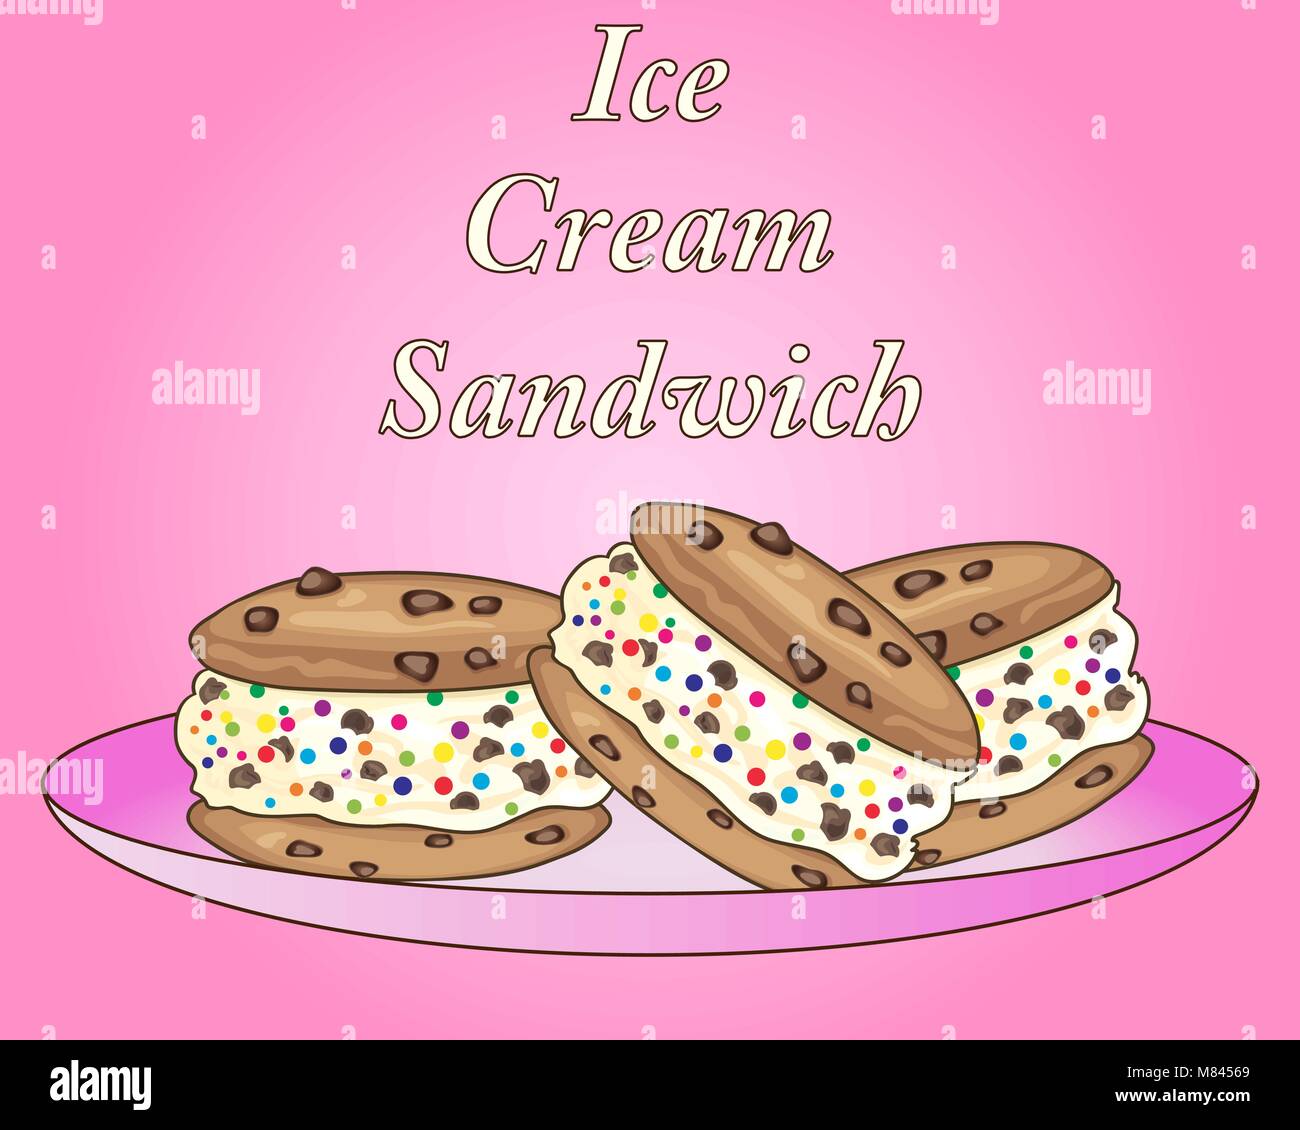 Un vecteur illustration en format eps 10 de sandwich à la crème glacée au chocolat avec des bonbons colorés traite sur une plaque rose Illustration de Vecteur